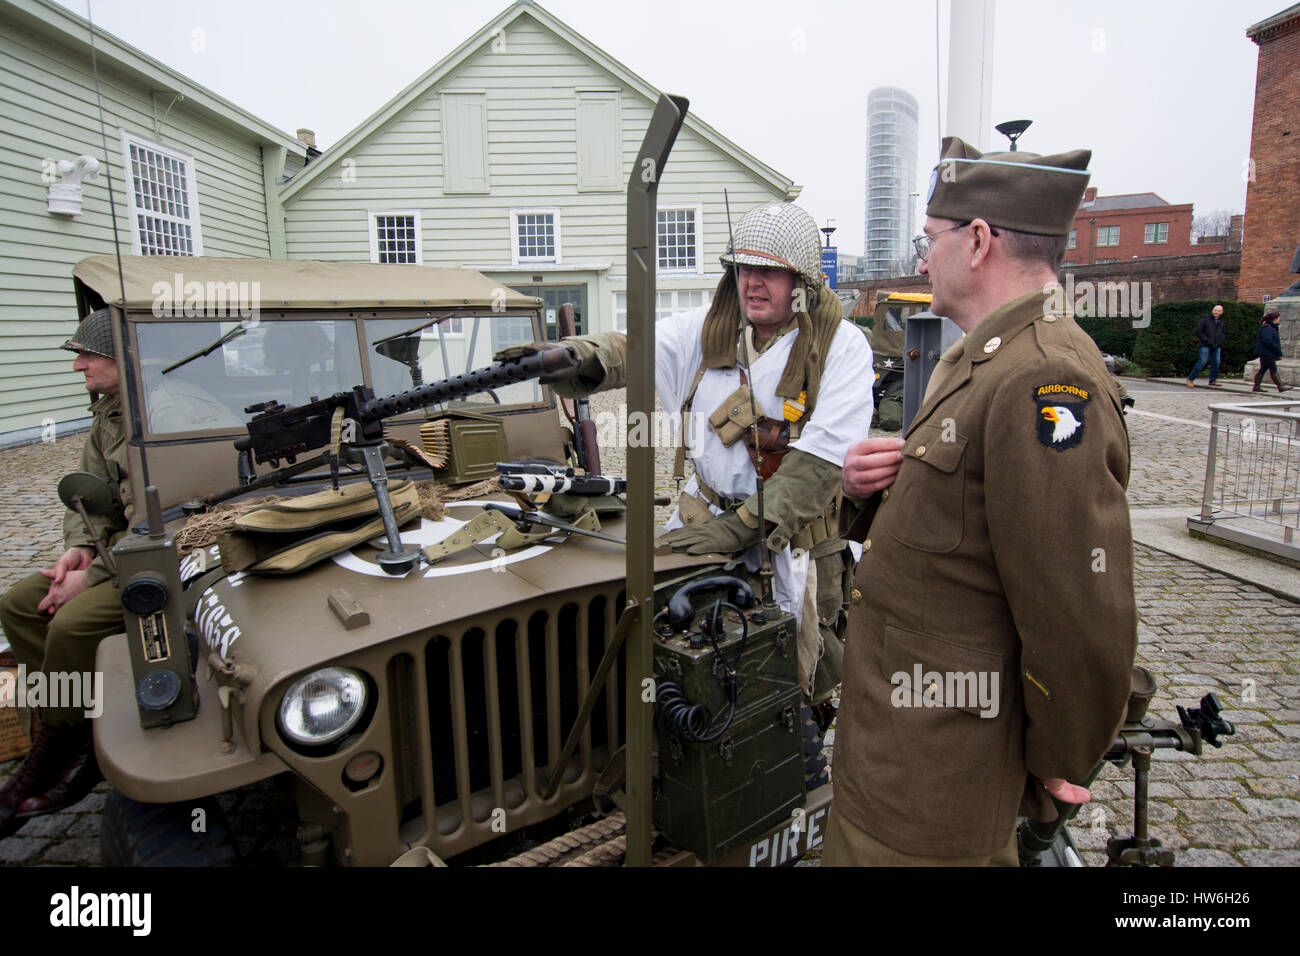 Jeep americano y ww2 soldados uniformados stand hablando a la recreación de eventos militares Foto de stock